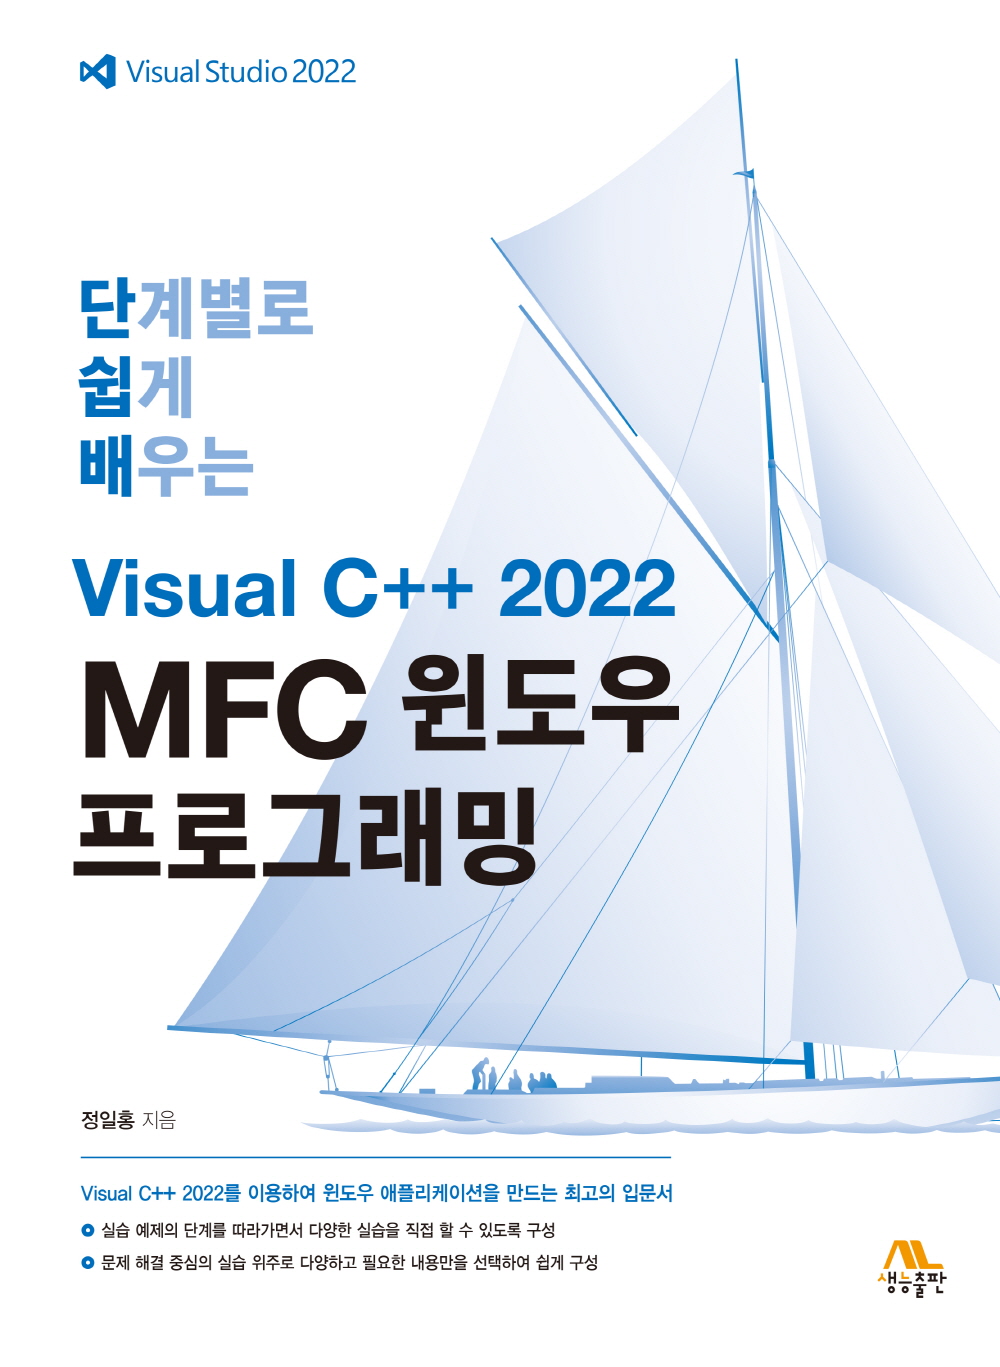 단계별로 쉽게 배우는 Visual C++ 2022 MFC 윈도우 프로그래밍